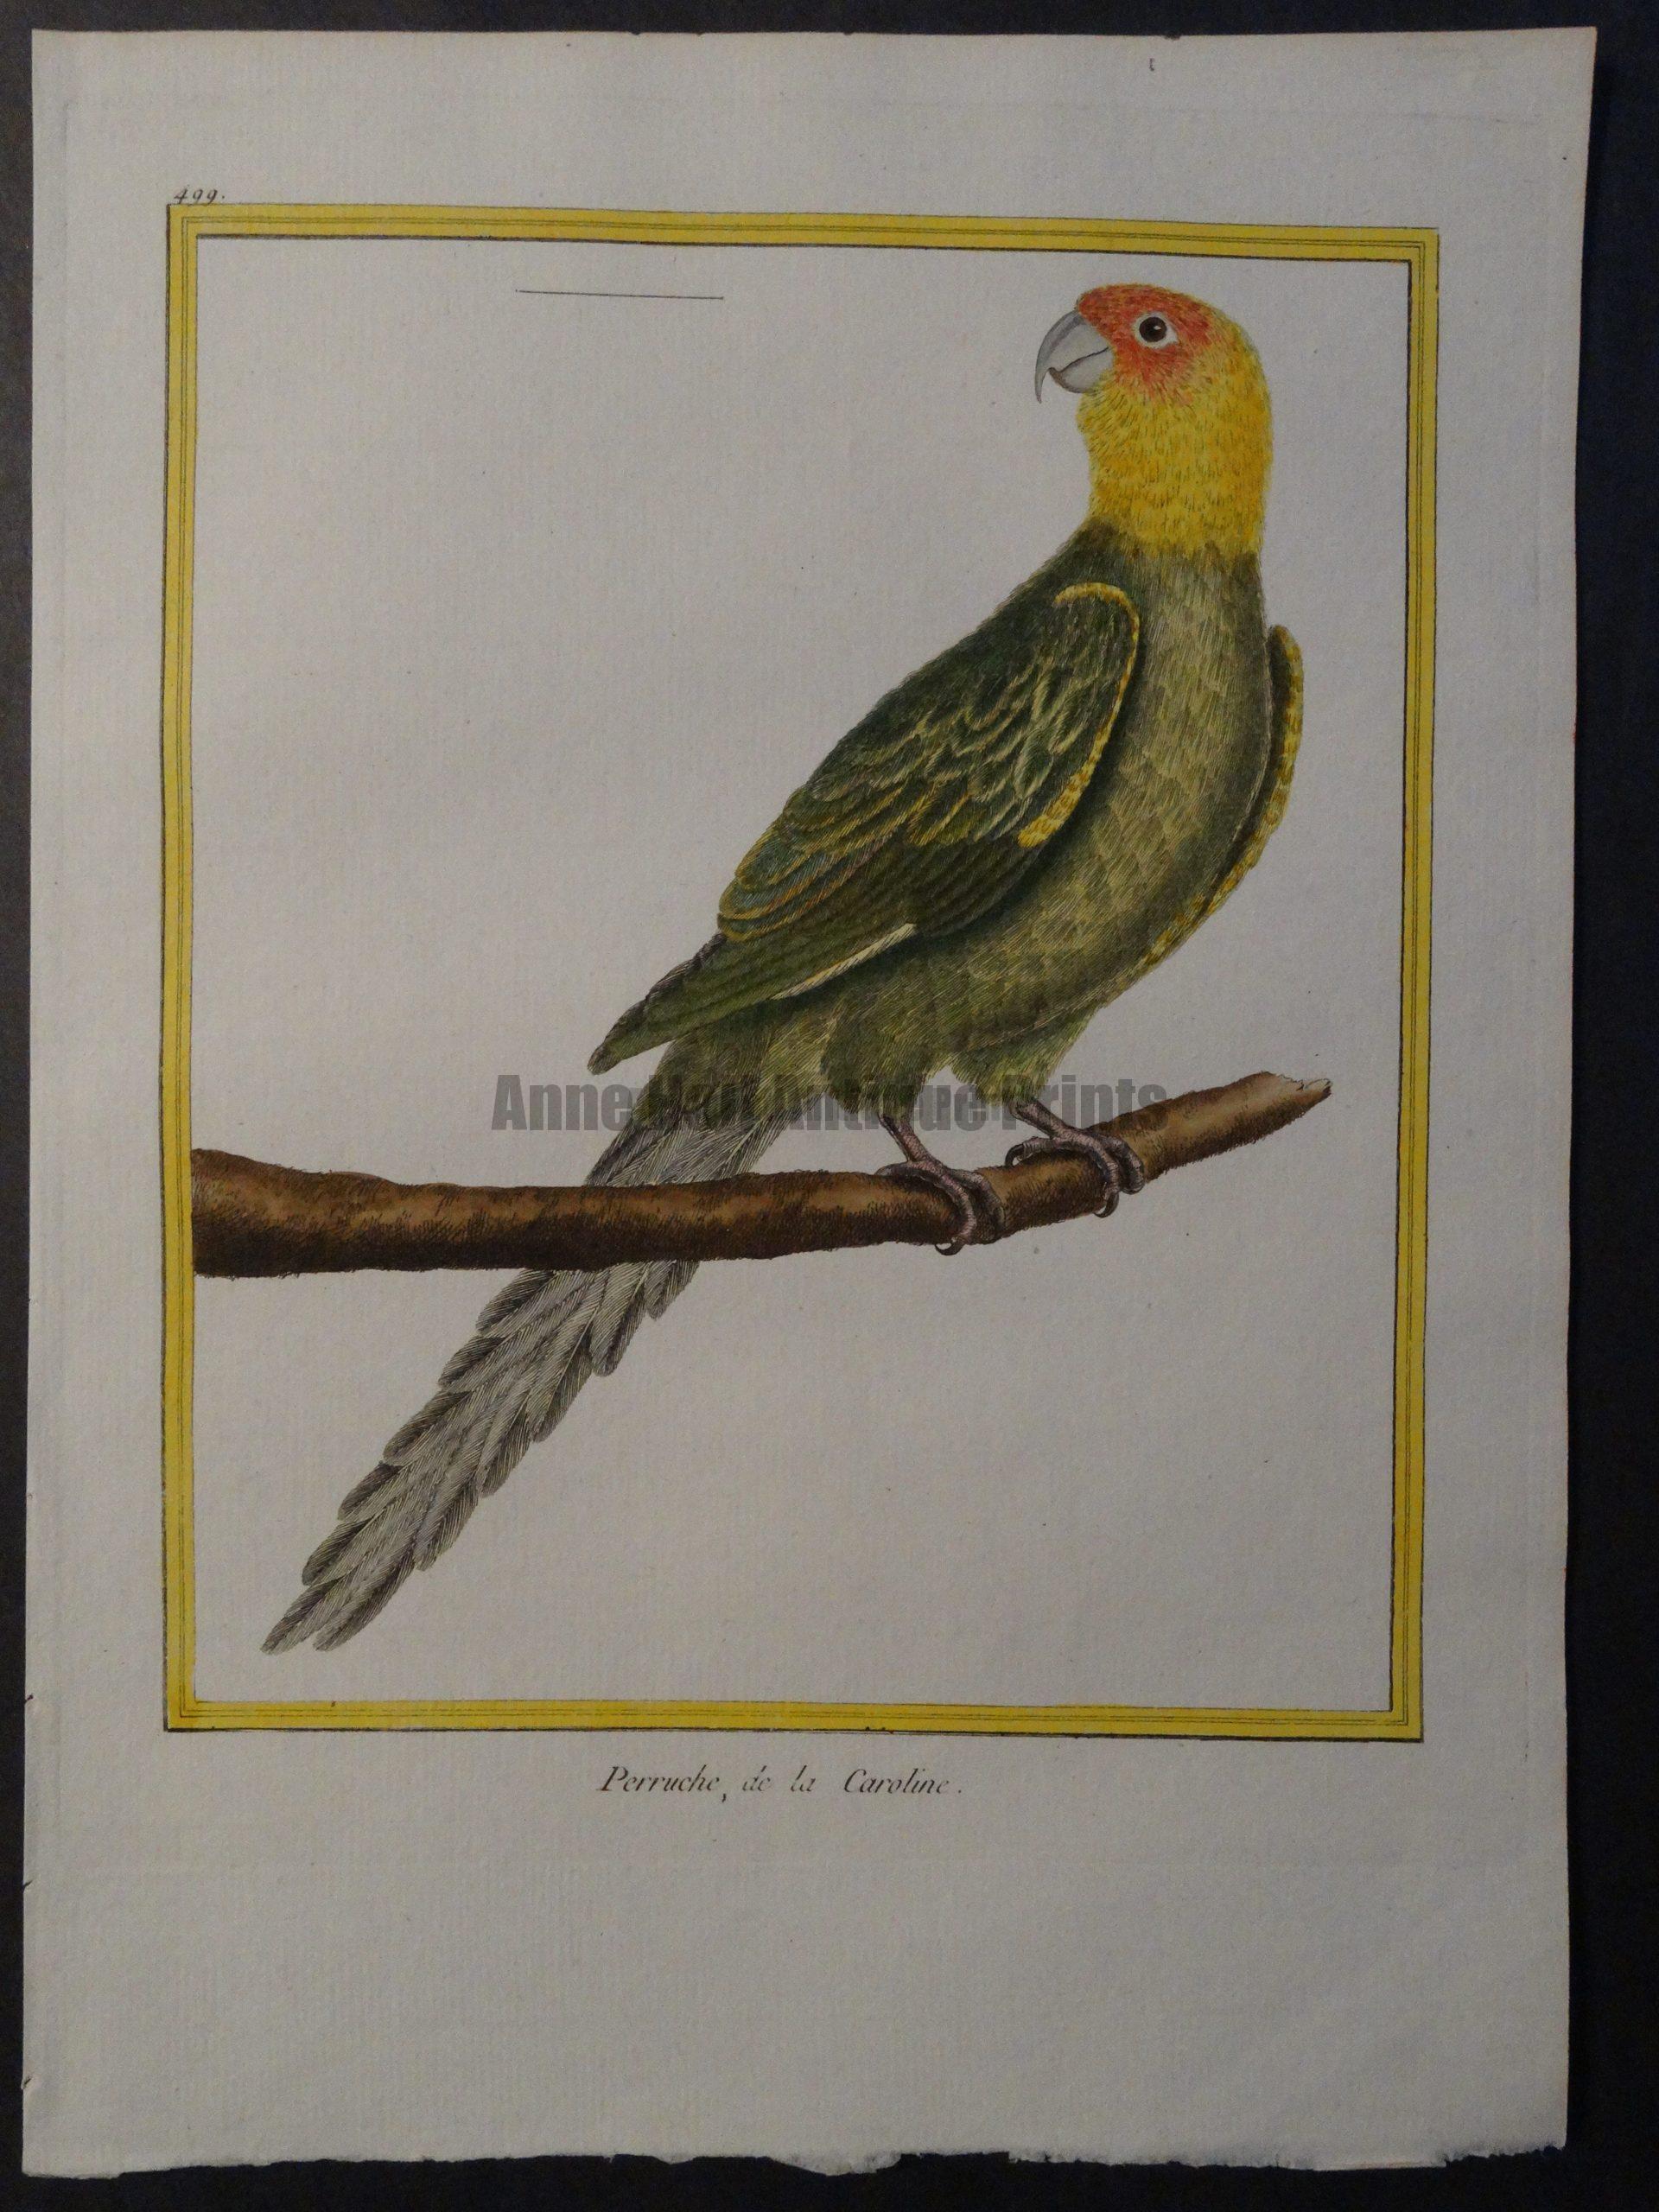 Parrot Martinet Perruche de la Caroline 499